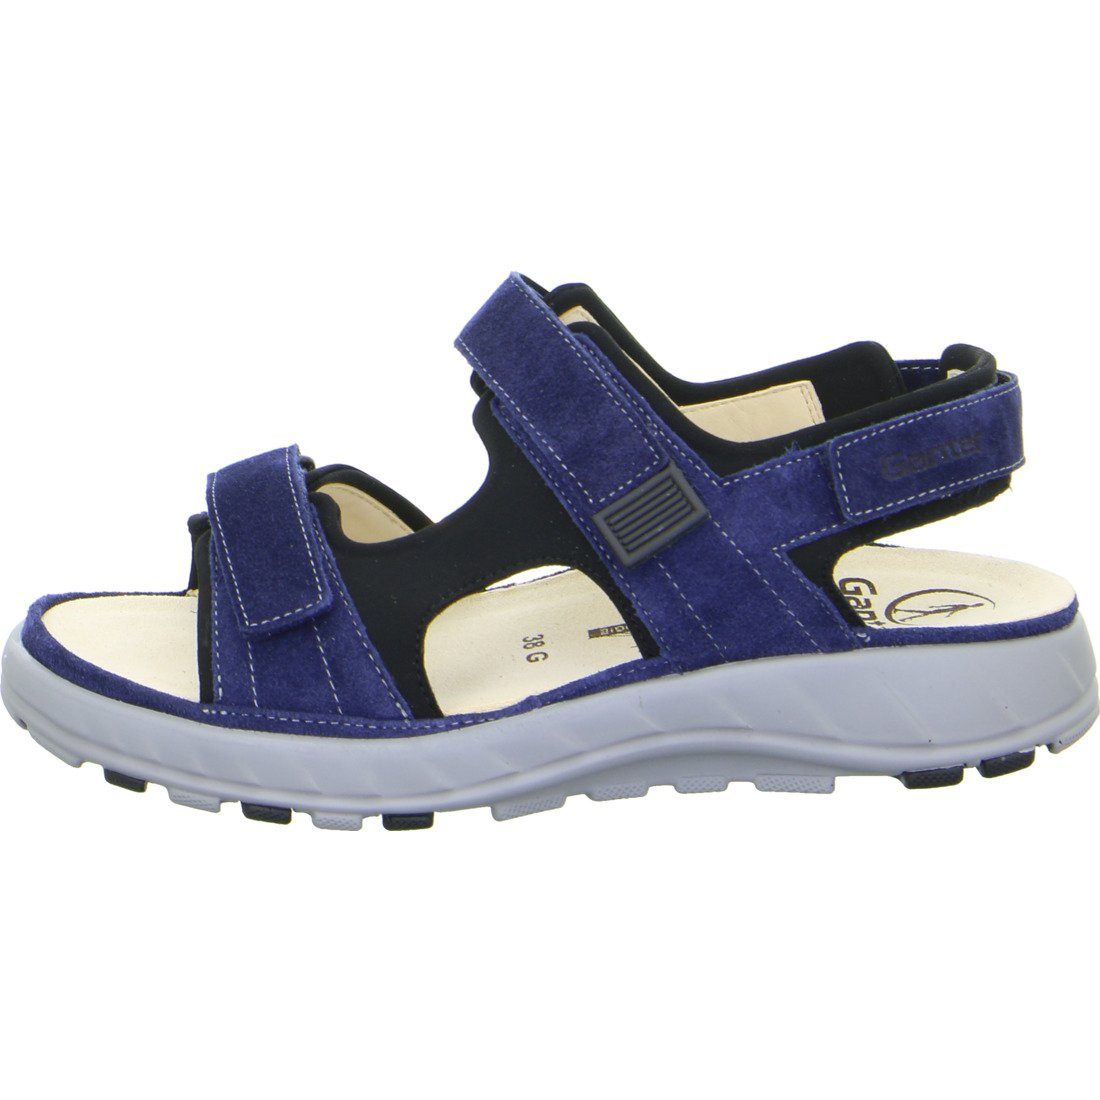 Ganter Sandalette Schuhe, - Ganter Geva 048814 Velours blau Damen Sandalette